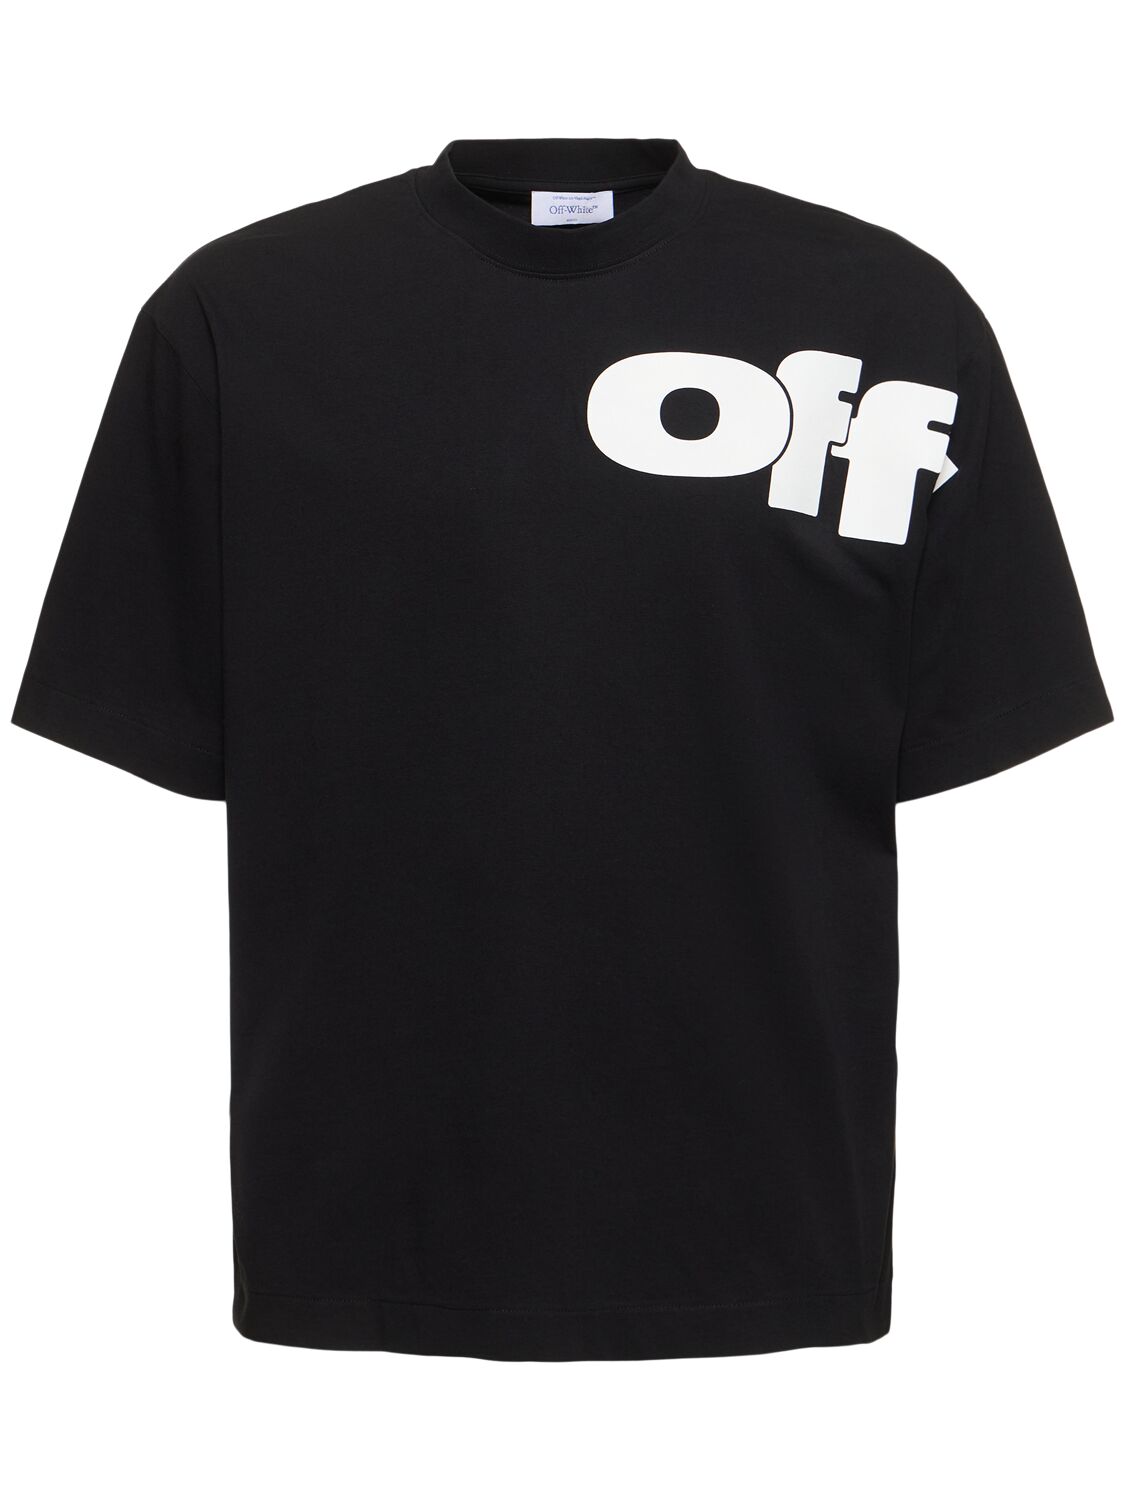 Off-white Shared Skate Logo Cotton T-shirt In Black